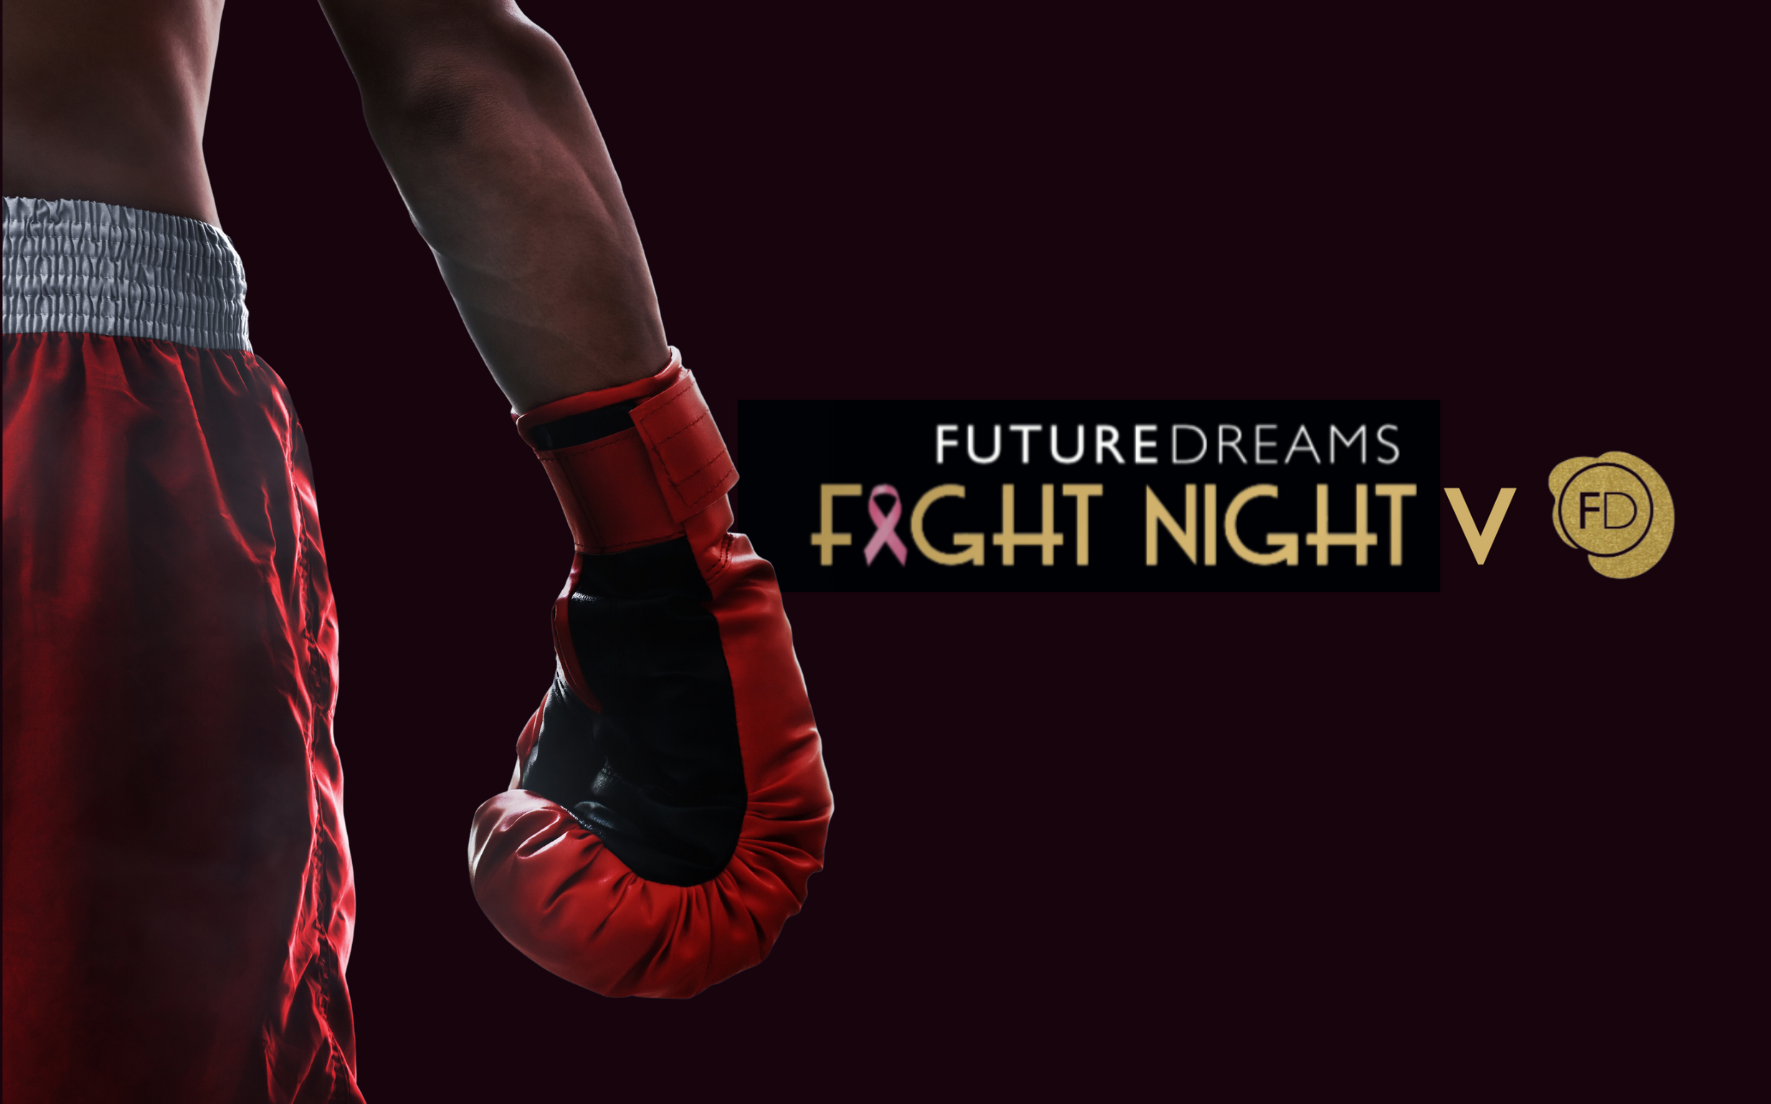 Fight Night V - White Collar Boxing Event Future Dreams